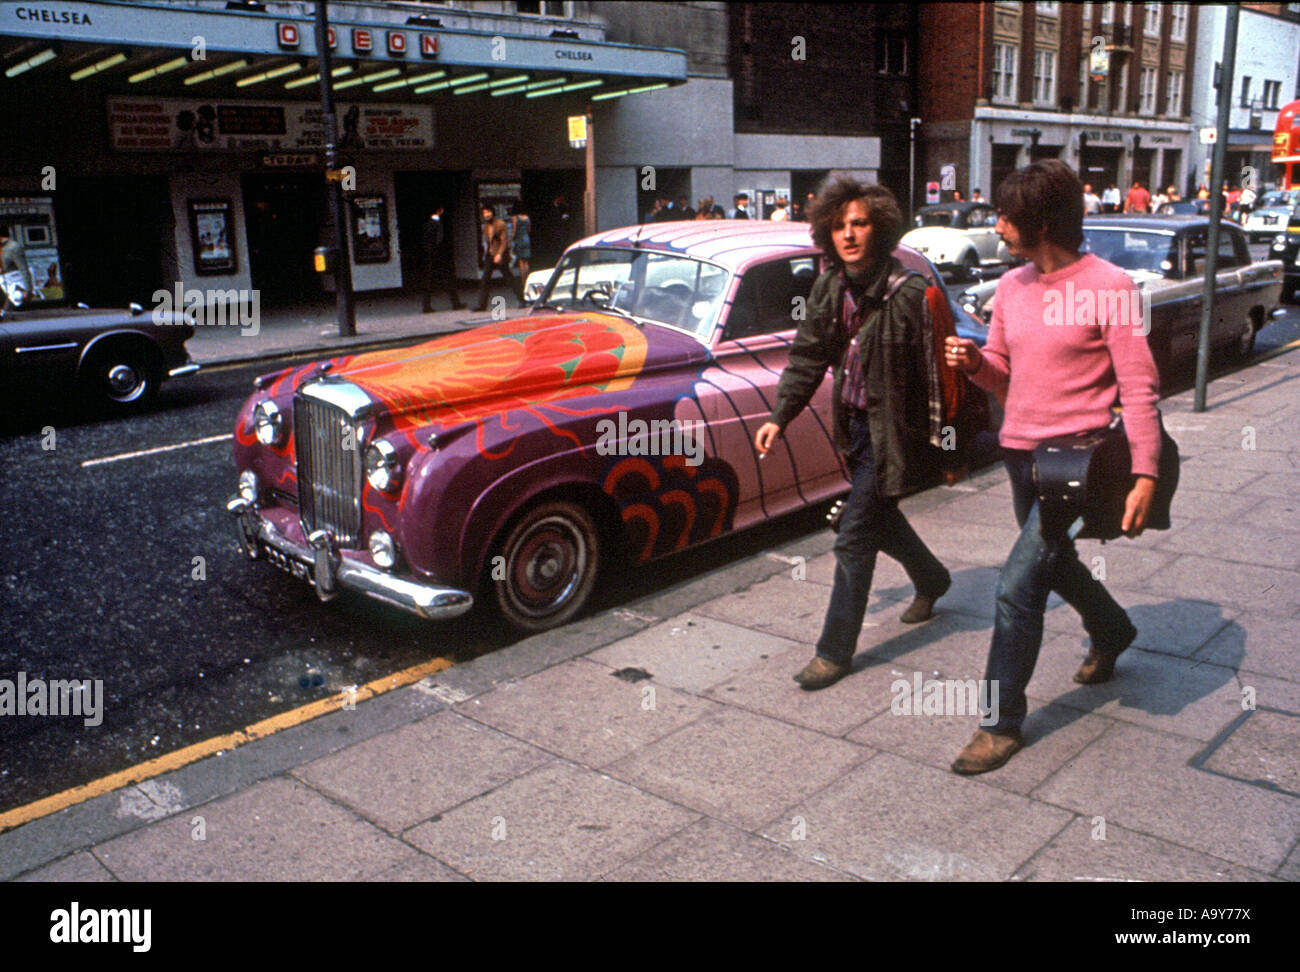 KINGS ROAD à Chelsea, Londres était le centre de mode de rue en 1965 lorsque cette photo a été prise Banque D'Images